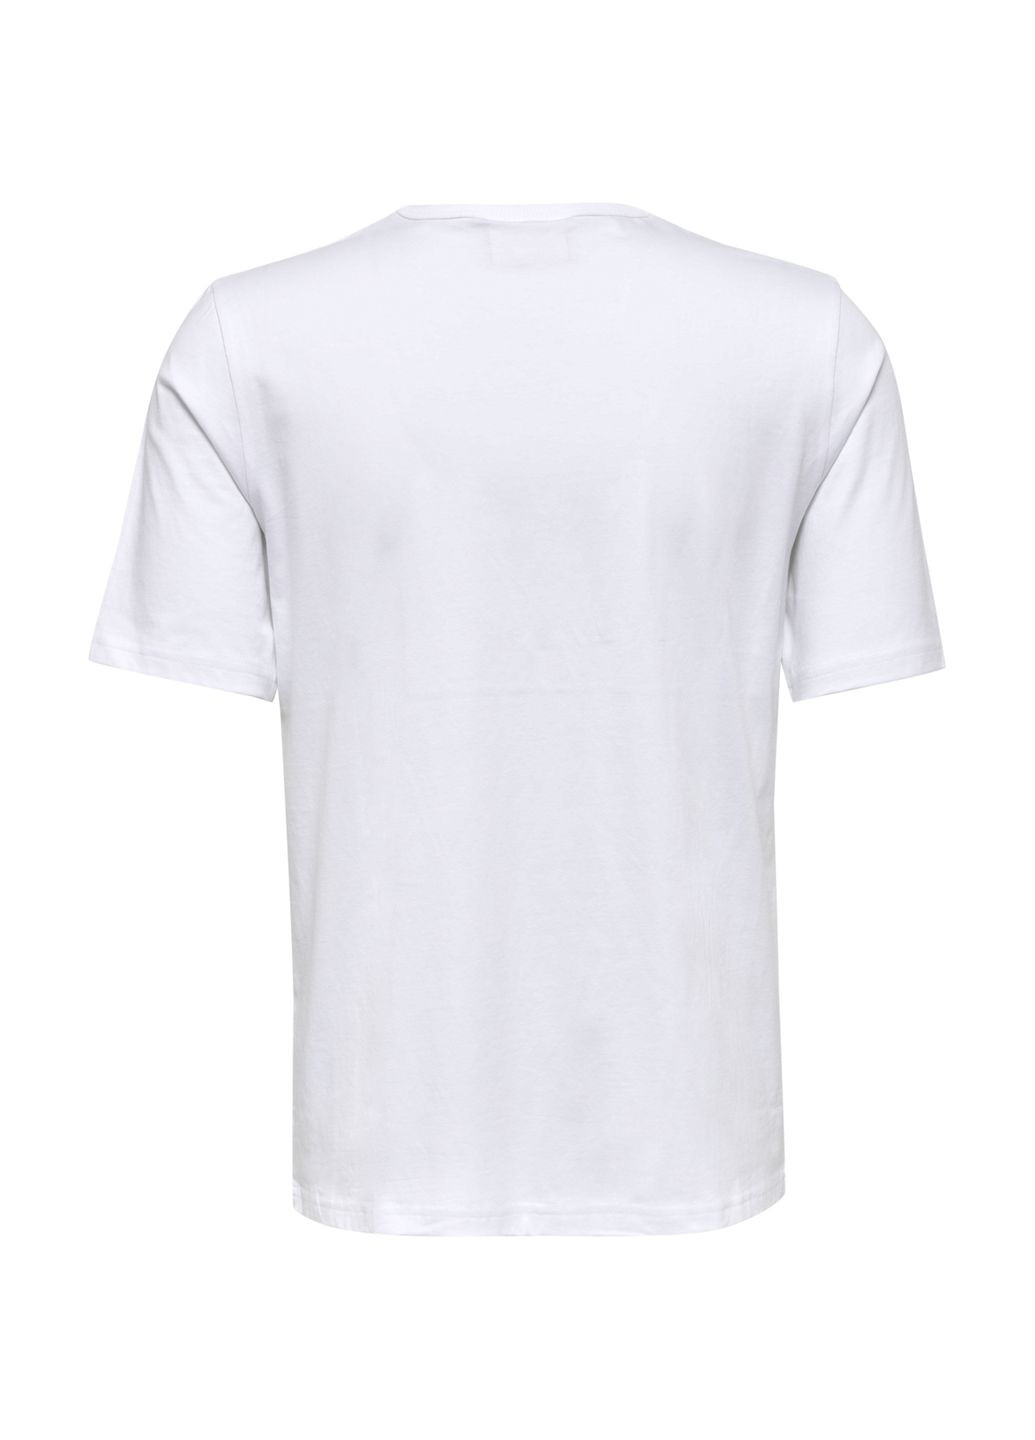 Біла футболка з логотипом для чоловіка 216027 білий Hummel